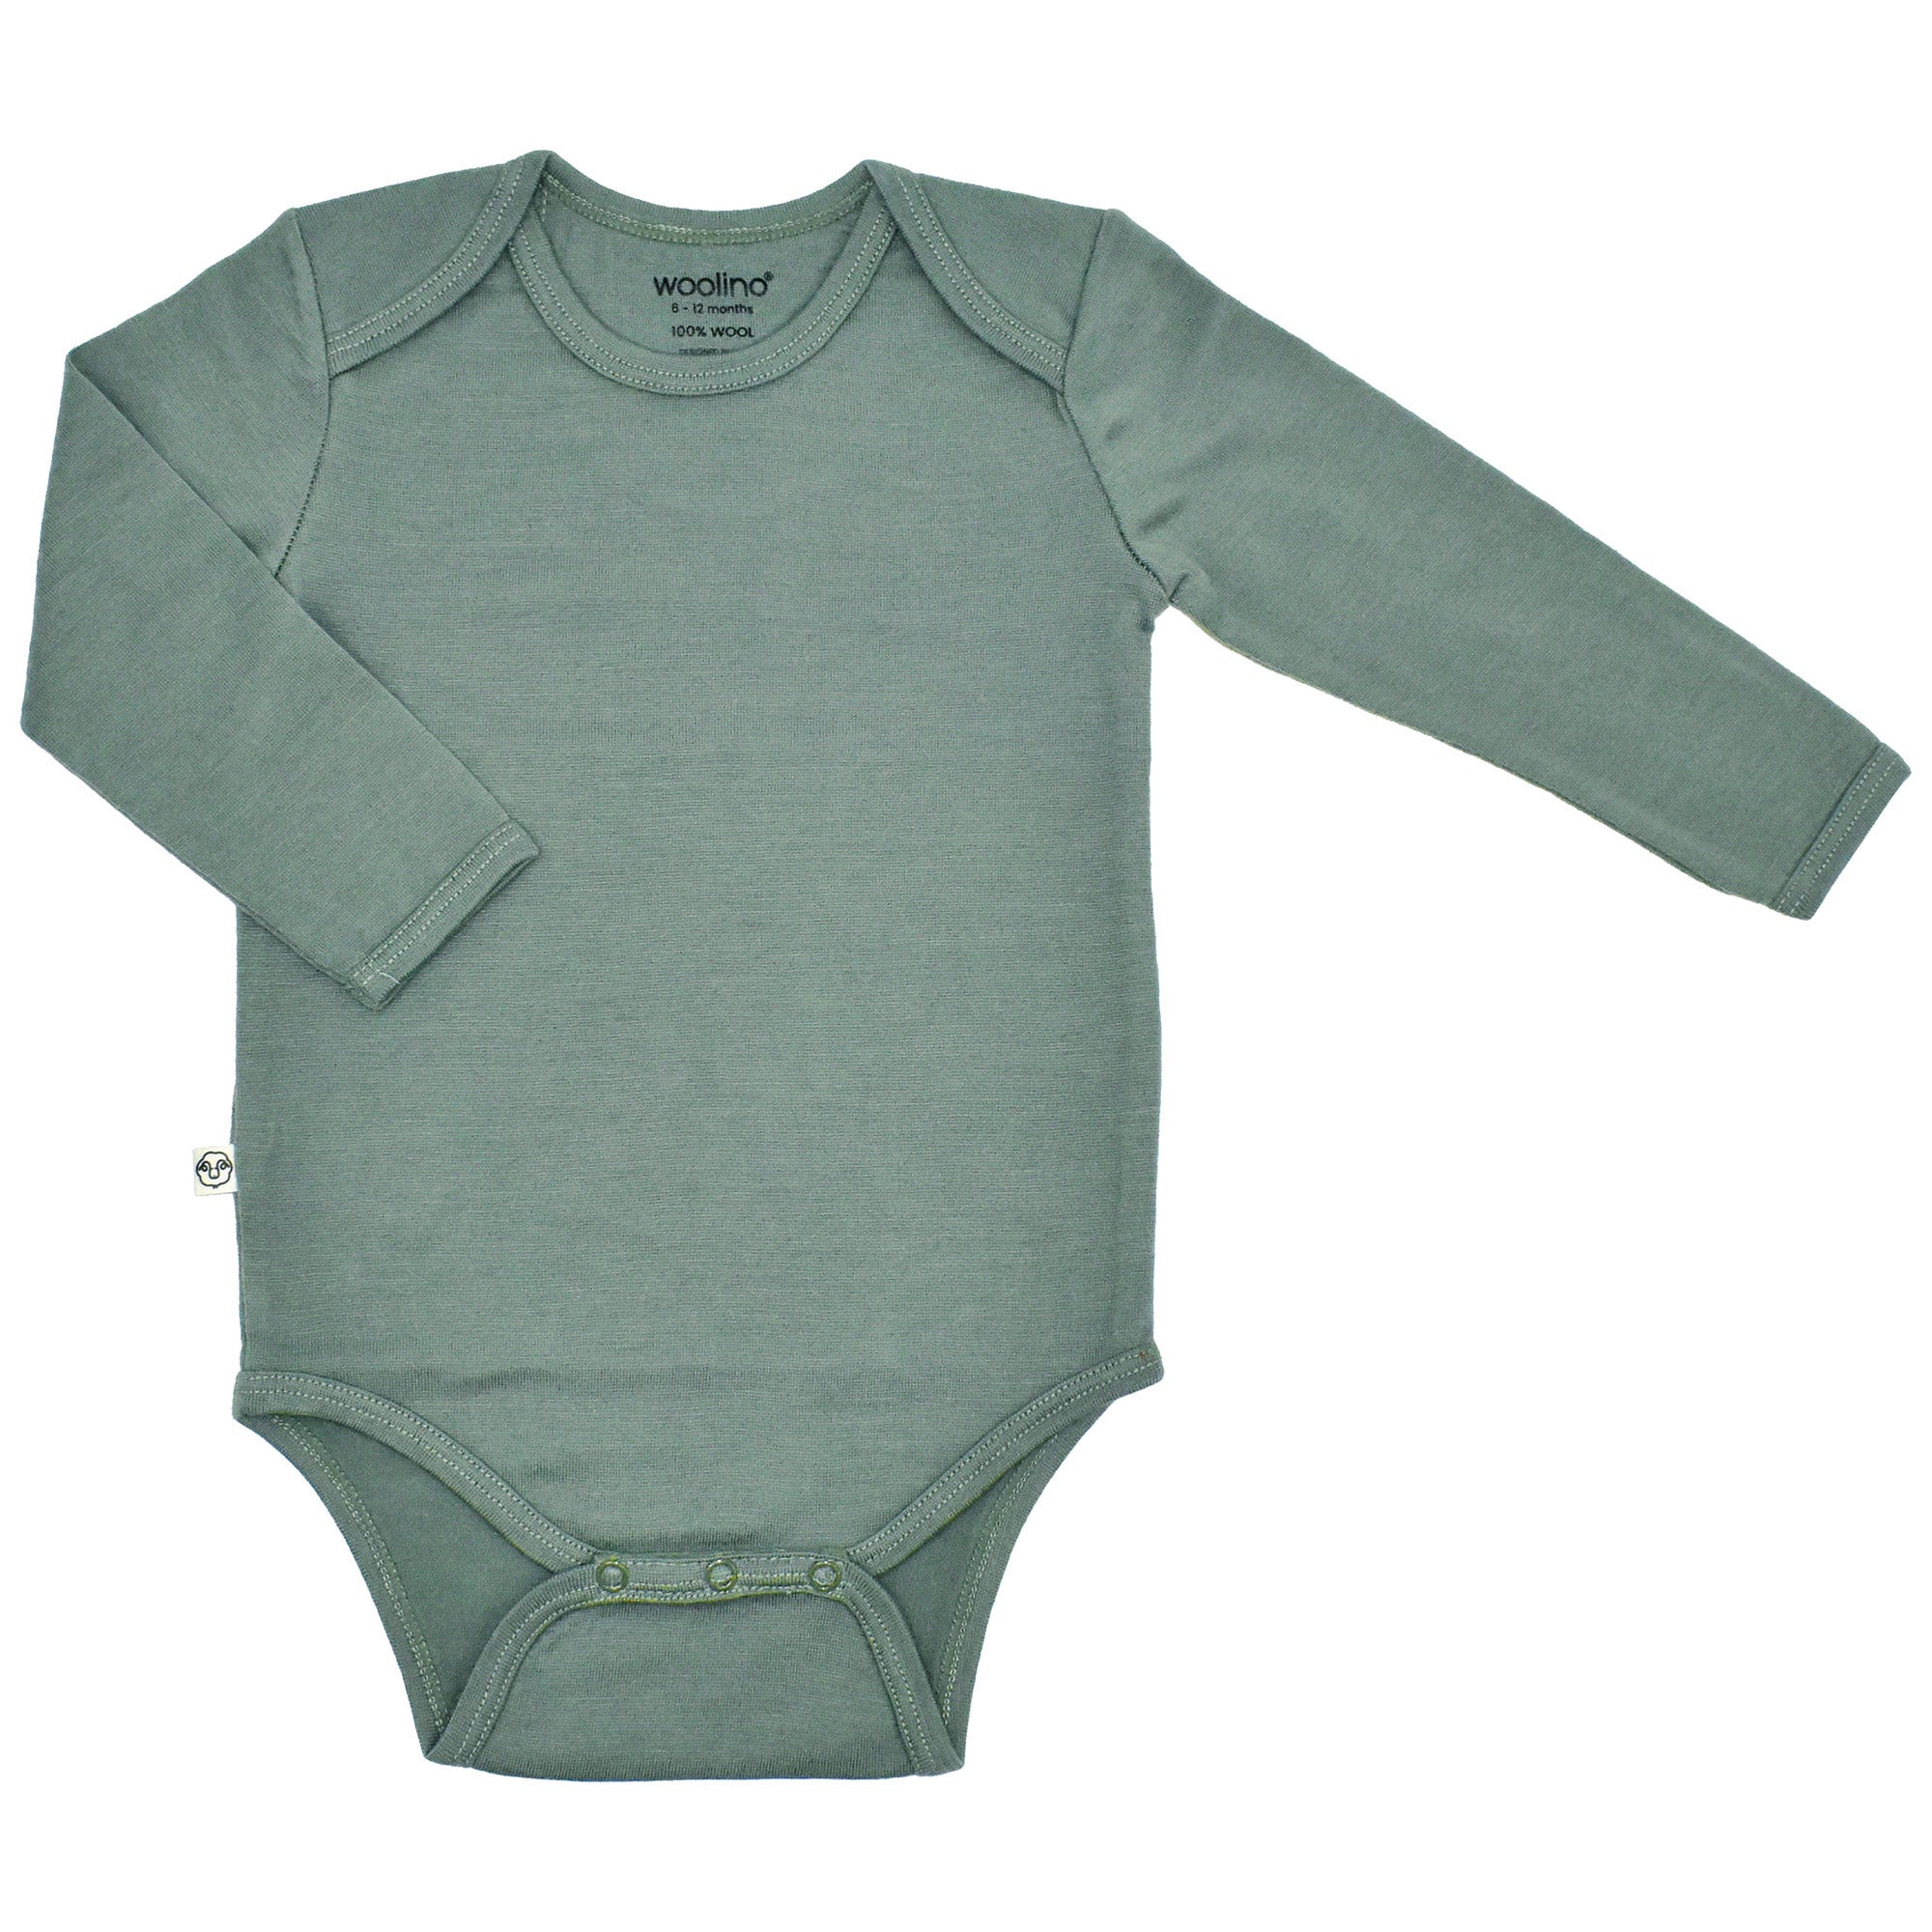 Merino Wool Baby Bodysuit | Natural Merino Wool Baby Clothing – Woolino